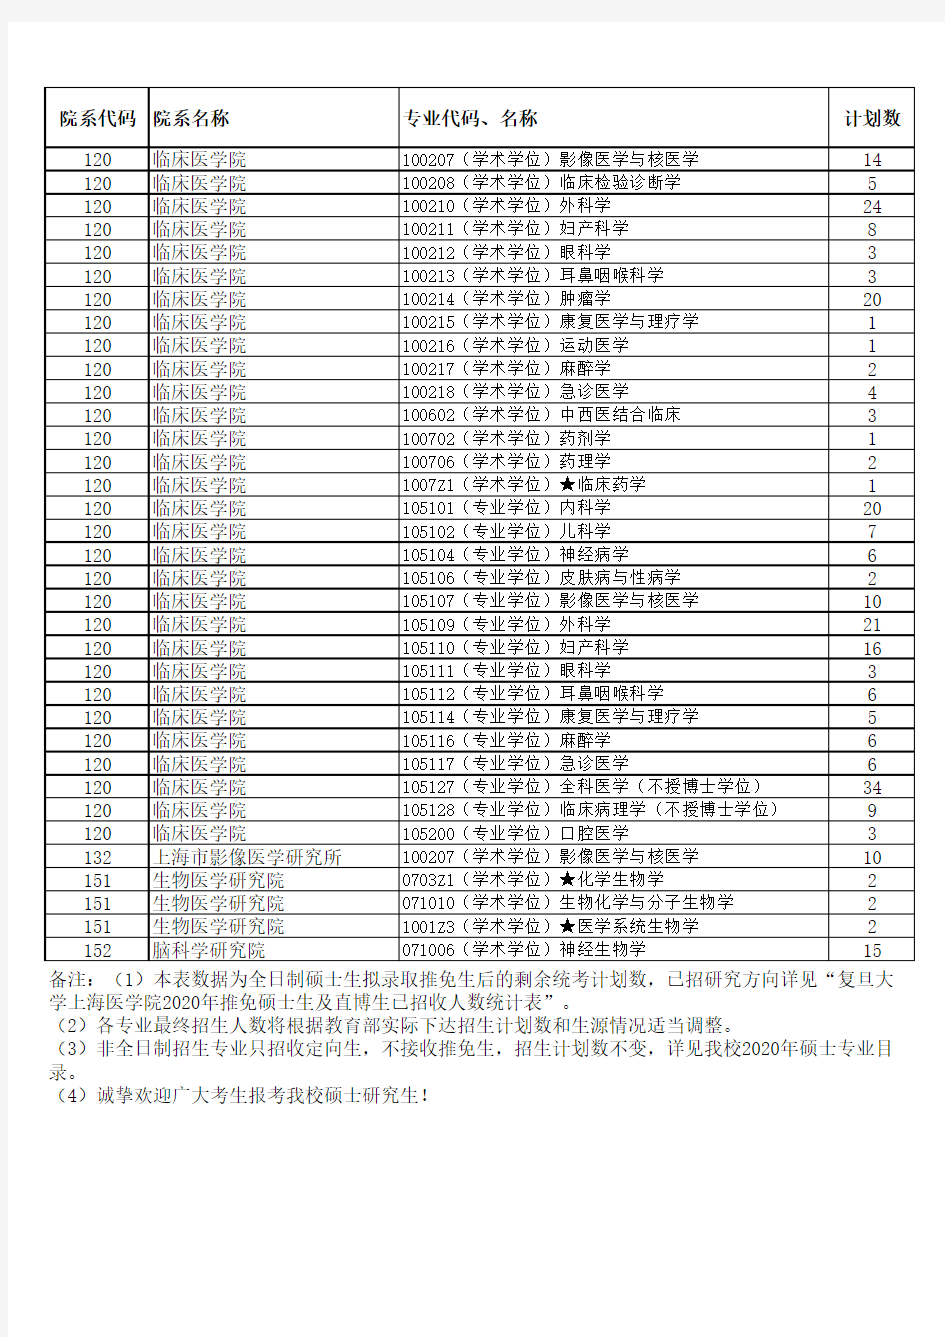 复旦大学上海医学院2020年全日制硕士生统考和单考招生计划